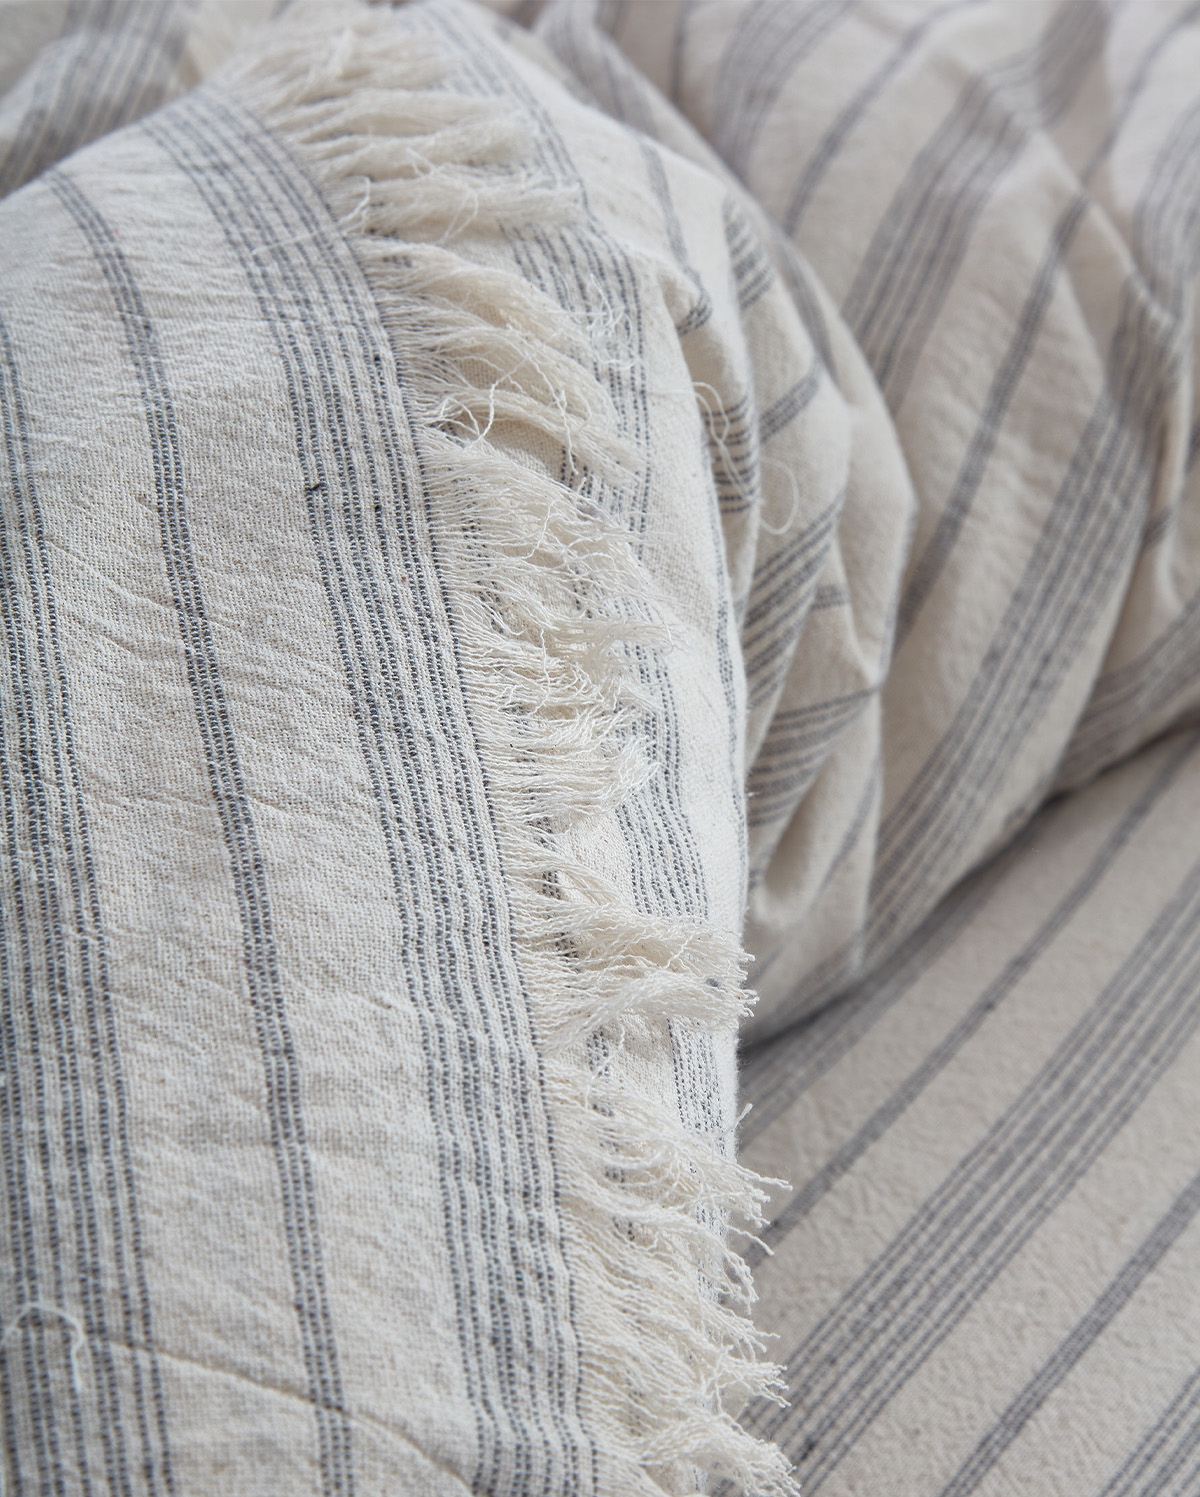 Linen Striped Duvet Cover Set - Light Grey